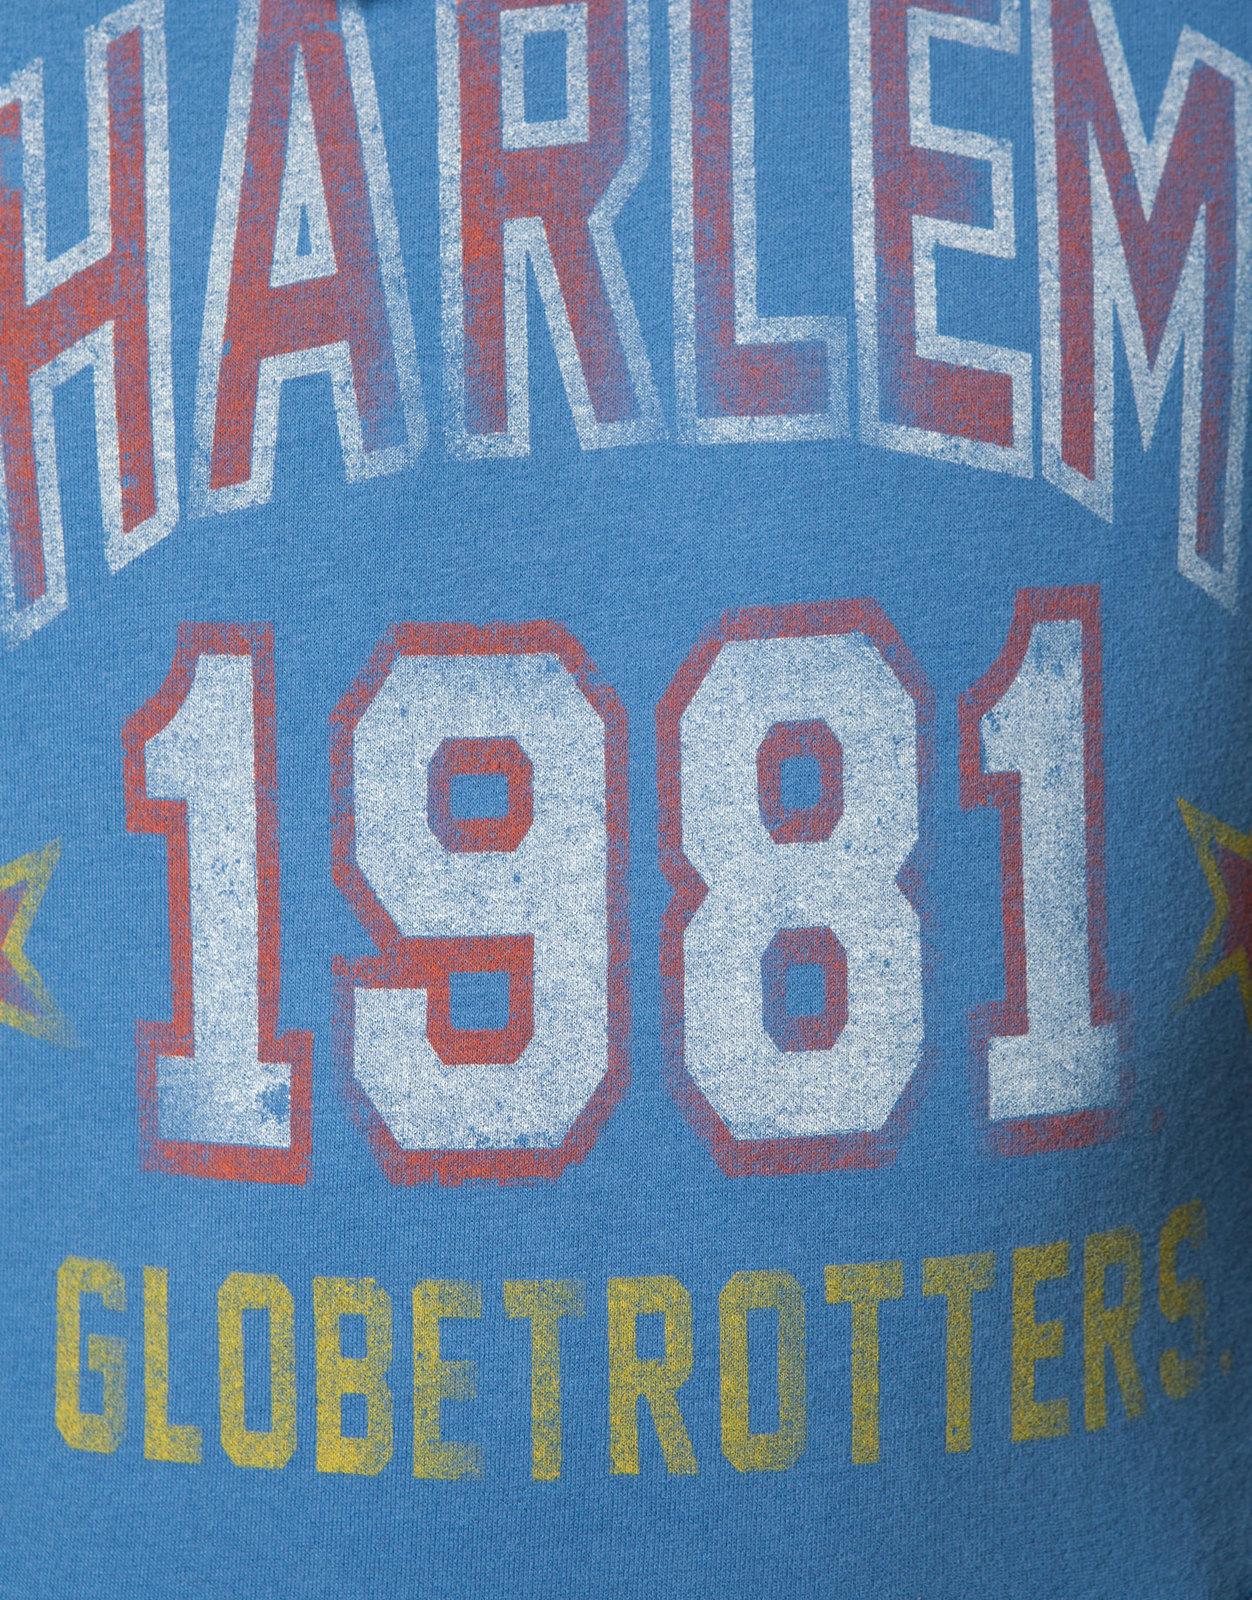 Pull and Bear Harlem Globetrotters pulóver 2012.2.13 fotója